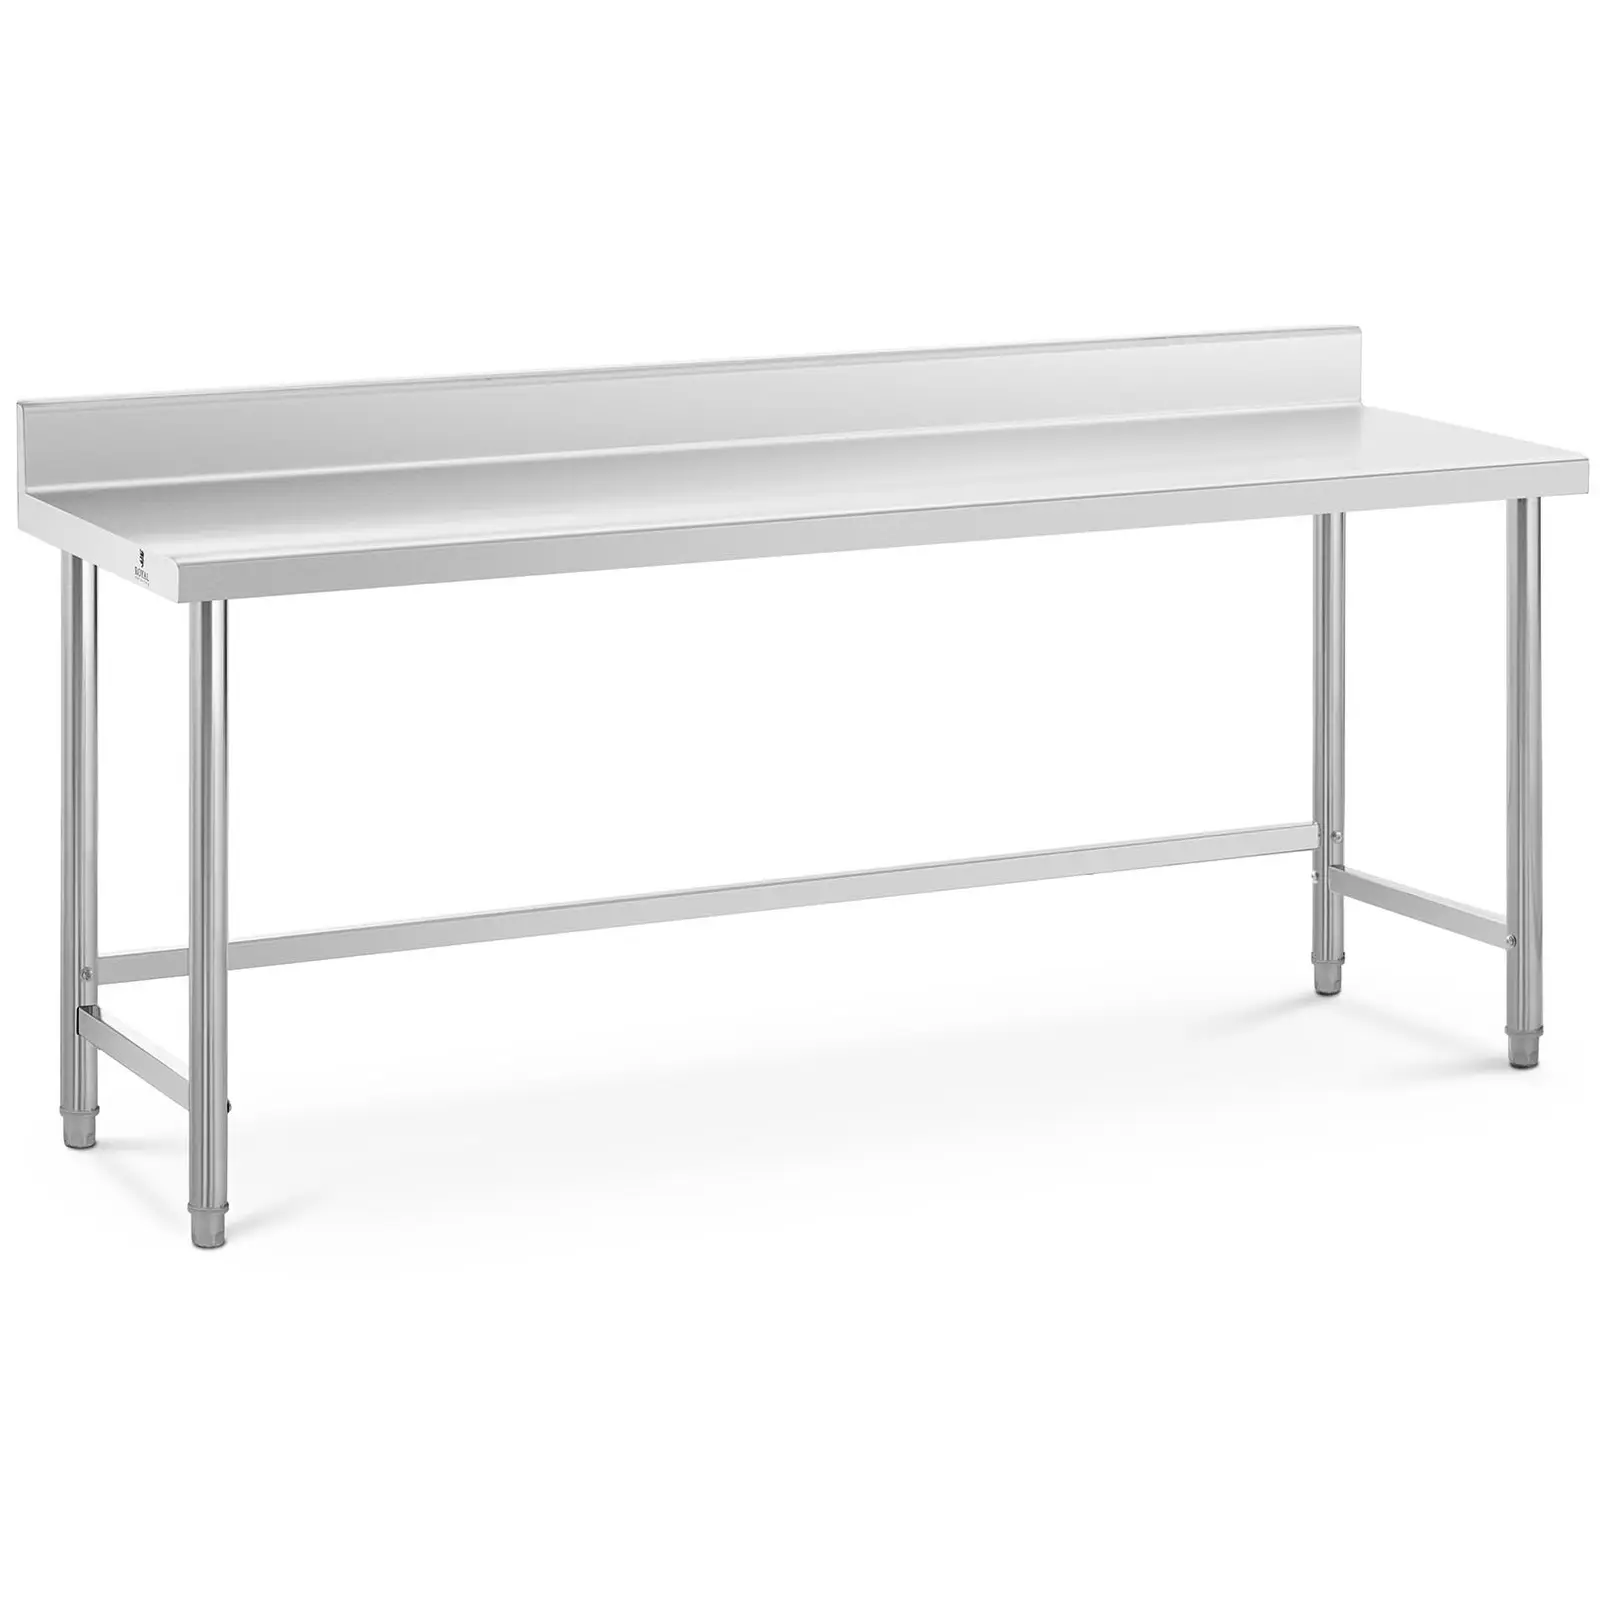 Pracovný stôl z nehrdzavejúcej ocele - 200 x 60 cm - lem - nosnosť 95 kg